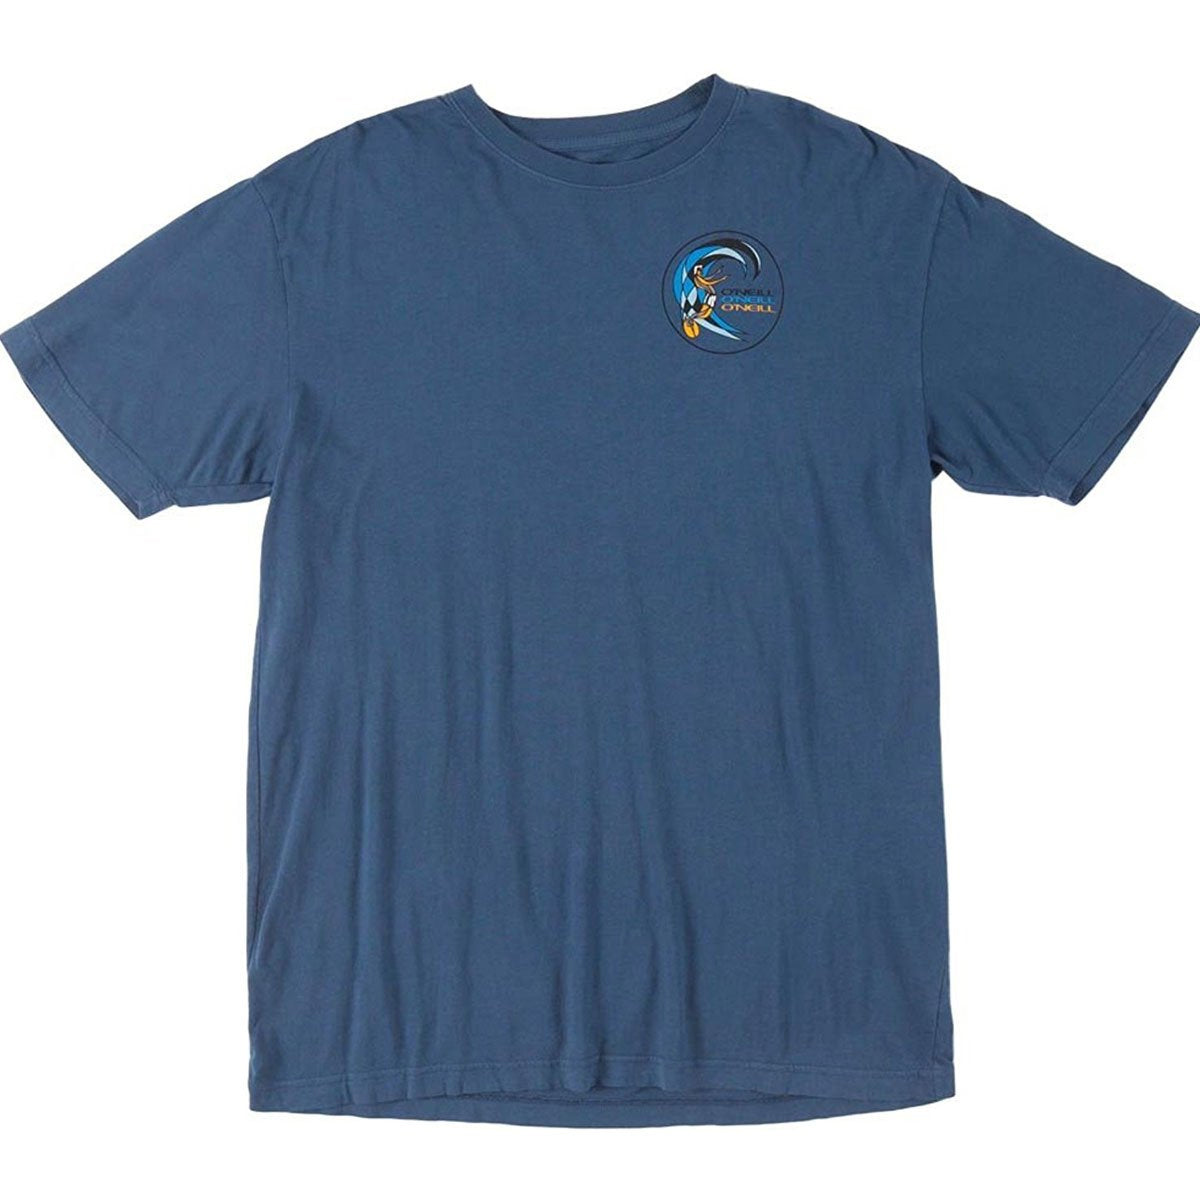 O'Neill 41st Street Men's Short-Sleeve Shirts - Denim Blue